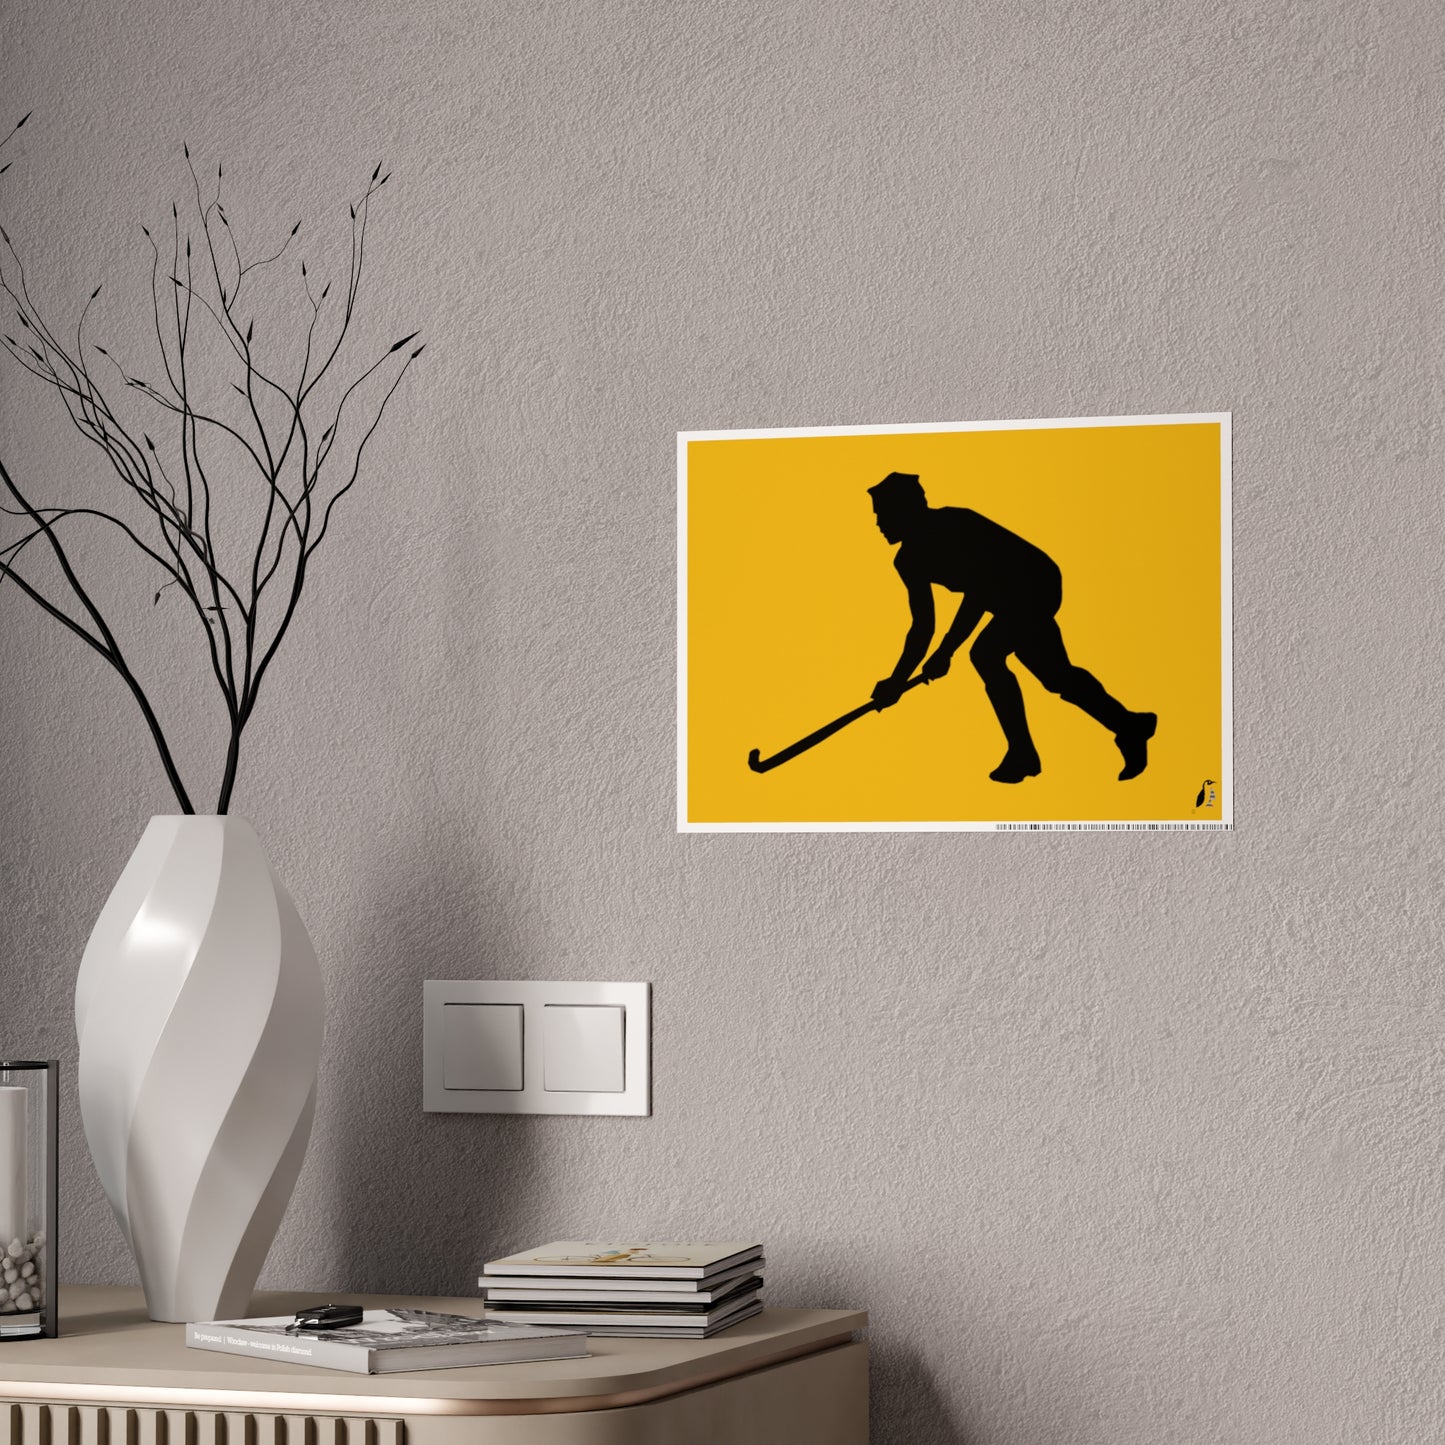 Gloss Posters: Hockey Yellow